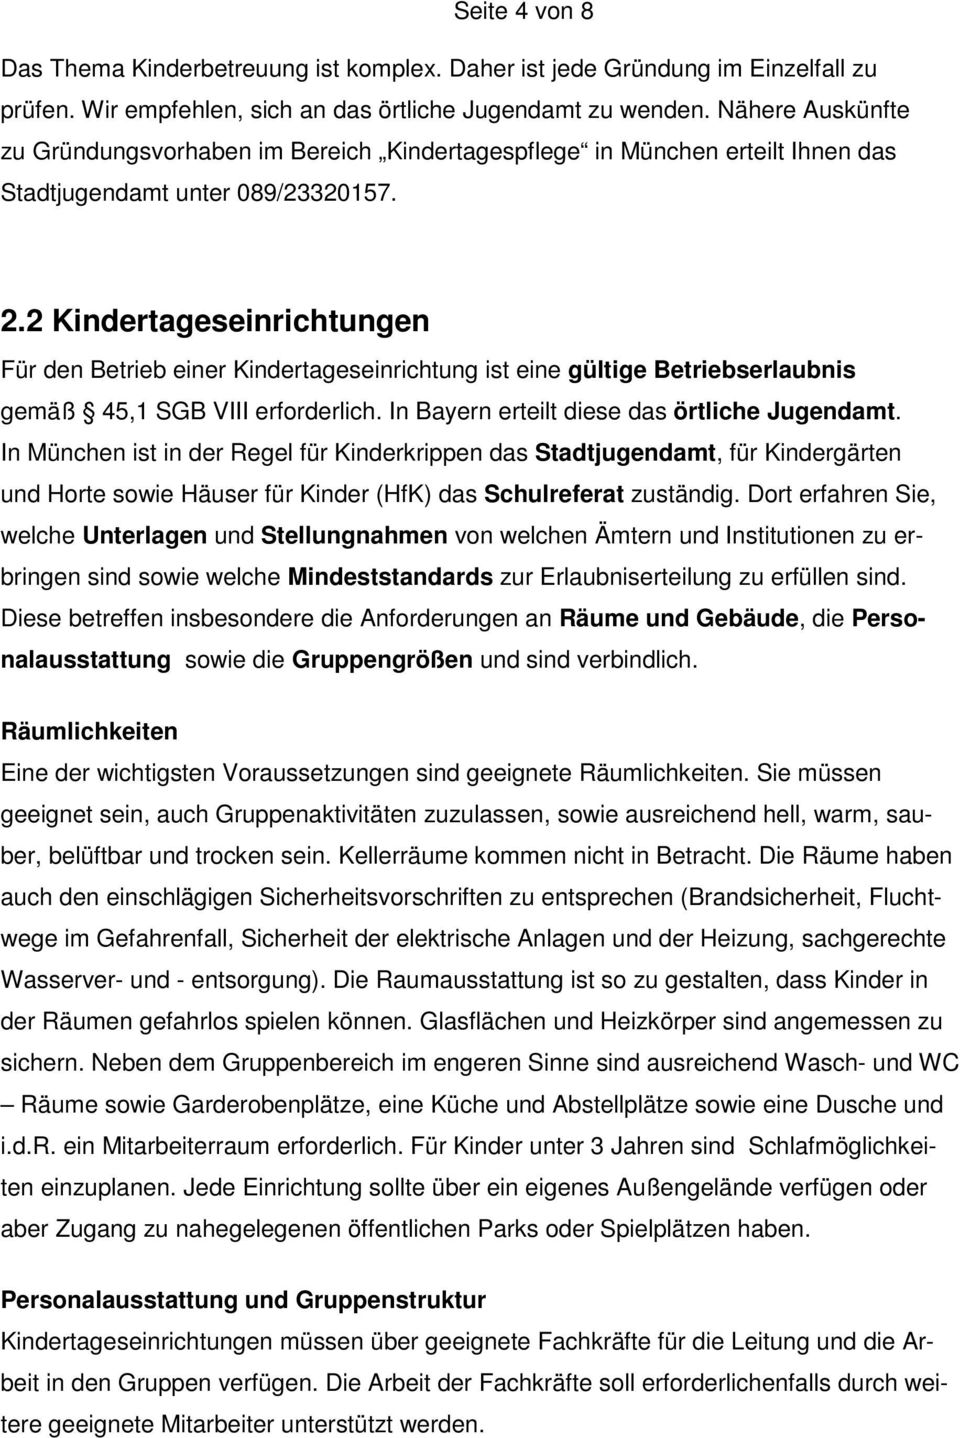 2 Kindertageseinrichtungen Für den Betrieb einer Kindertageseinrichtung ist eine gültige Betriebserlaubnis gemäß 45,1 SGB VIII erforderlich. In Bayern erteilt diese das örtliche Jugendamt.